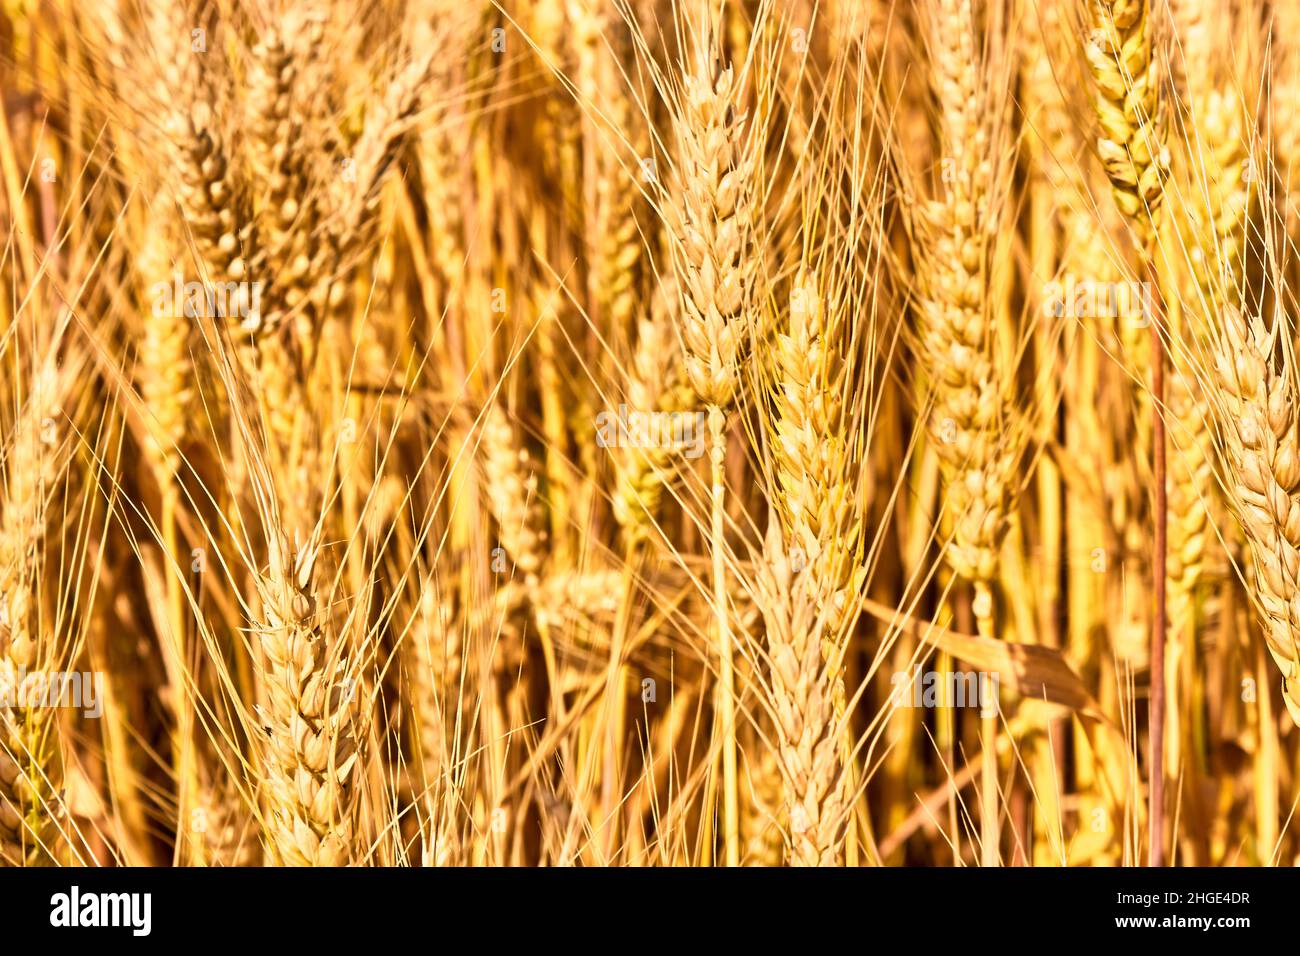 Nahaufnahme des goldenen Weizenfeldes. Weizenspikeletts an einem hellen, sonnigen Tag. Das Thema Landwirtschaft, eine reiche Ernte, Landwirtschaft. Landwirtschaftliche Sommerlandschaft. Stockfoto